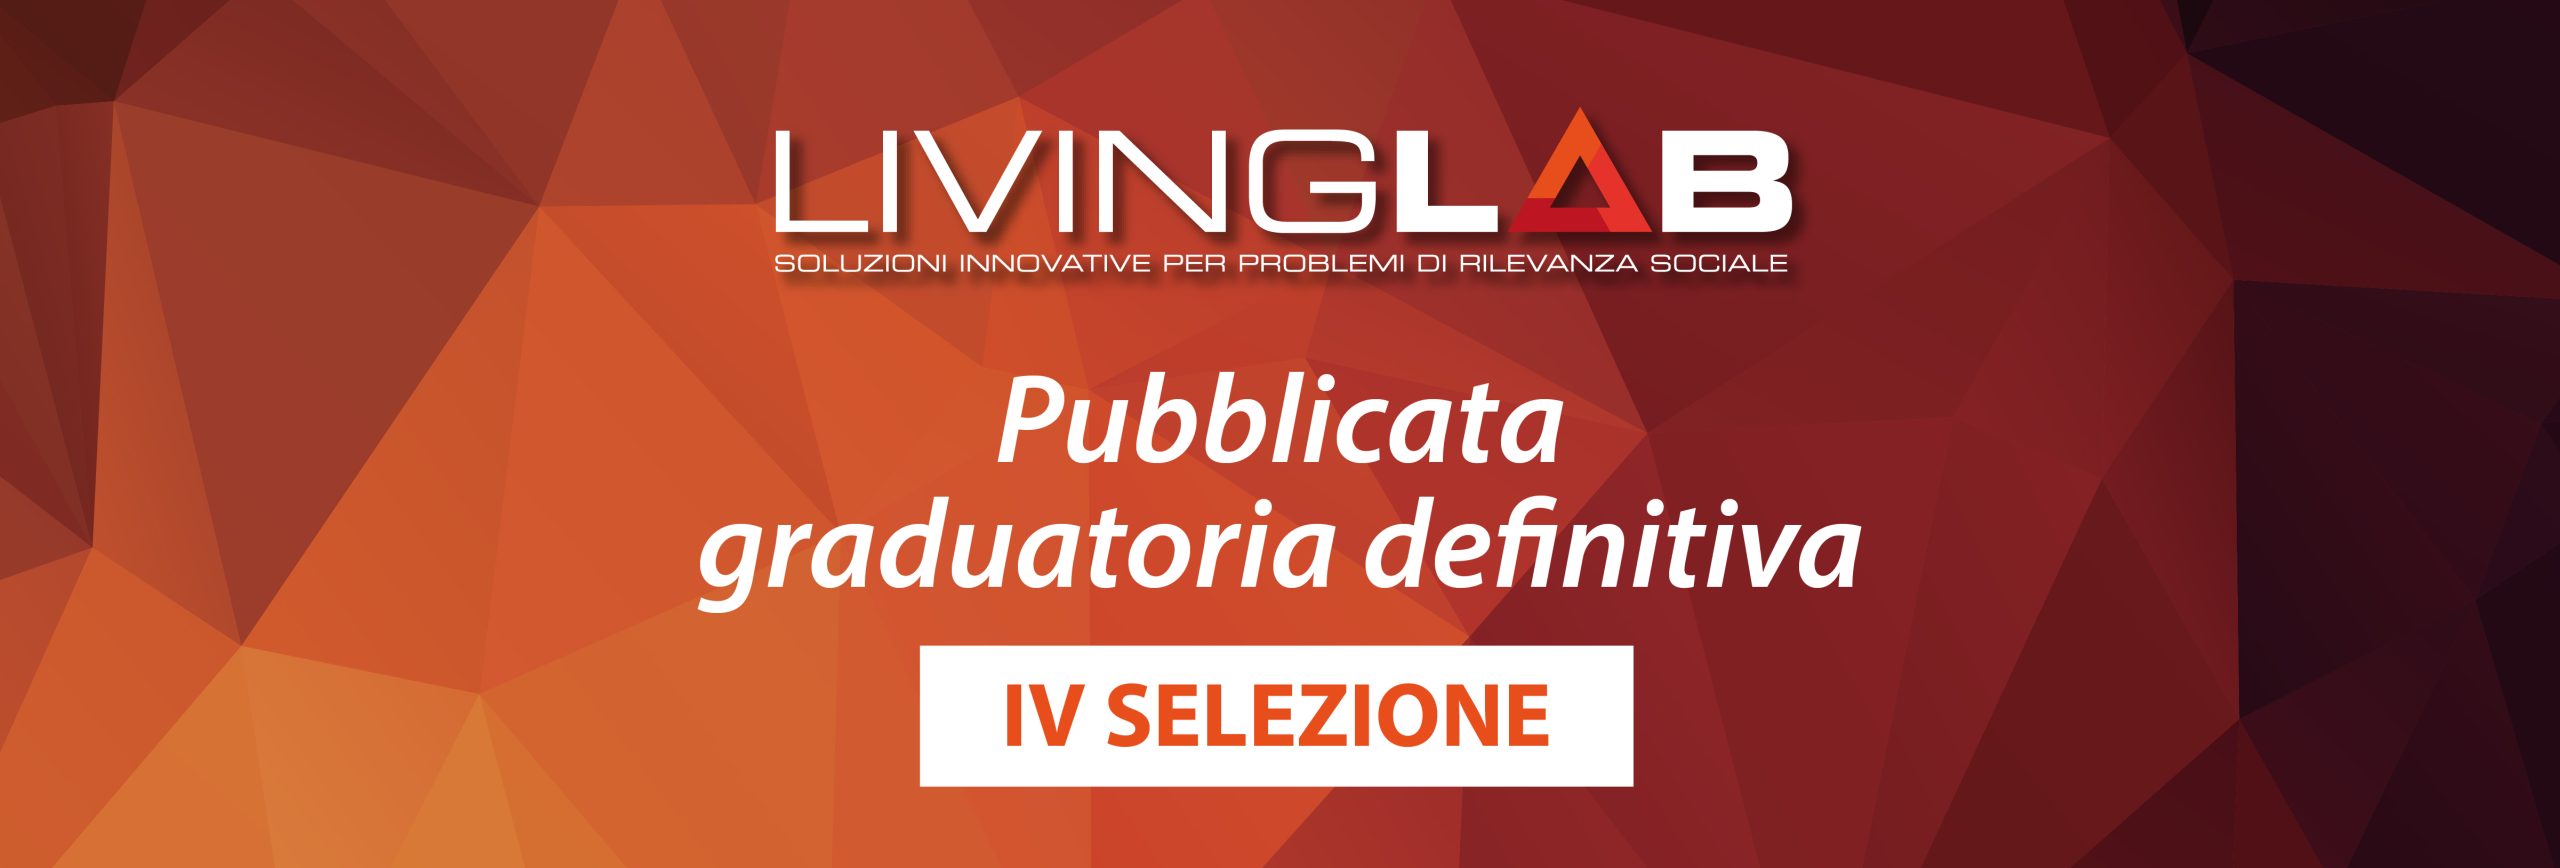 Living Lab: pubblicate le graduatorie definitive IV selezione